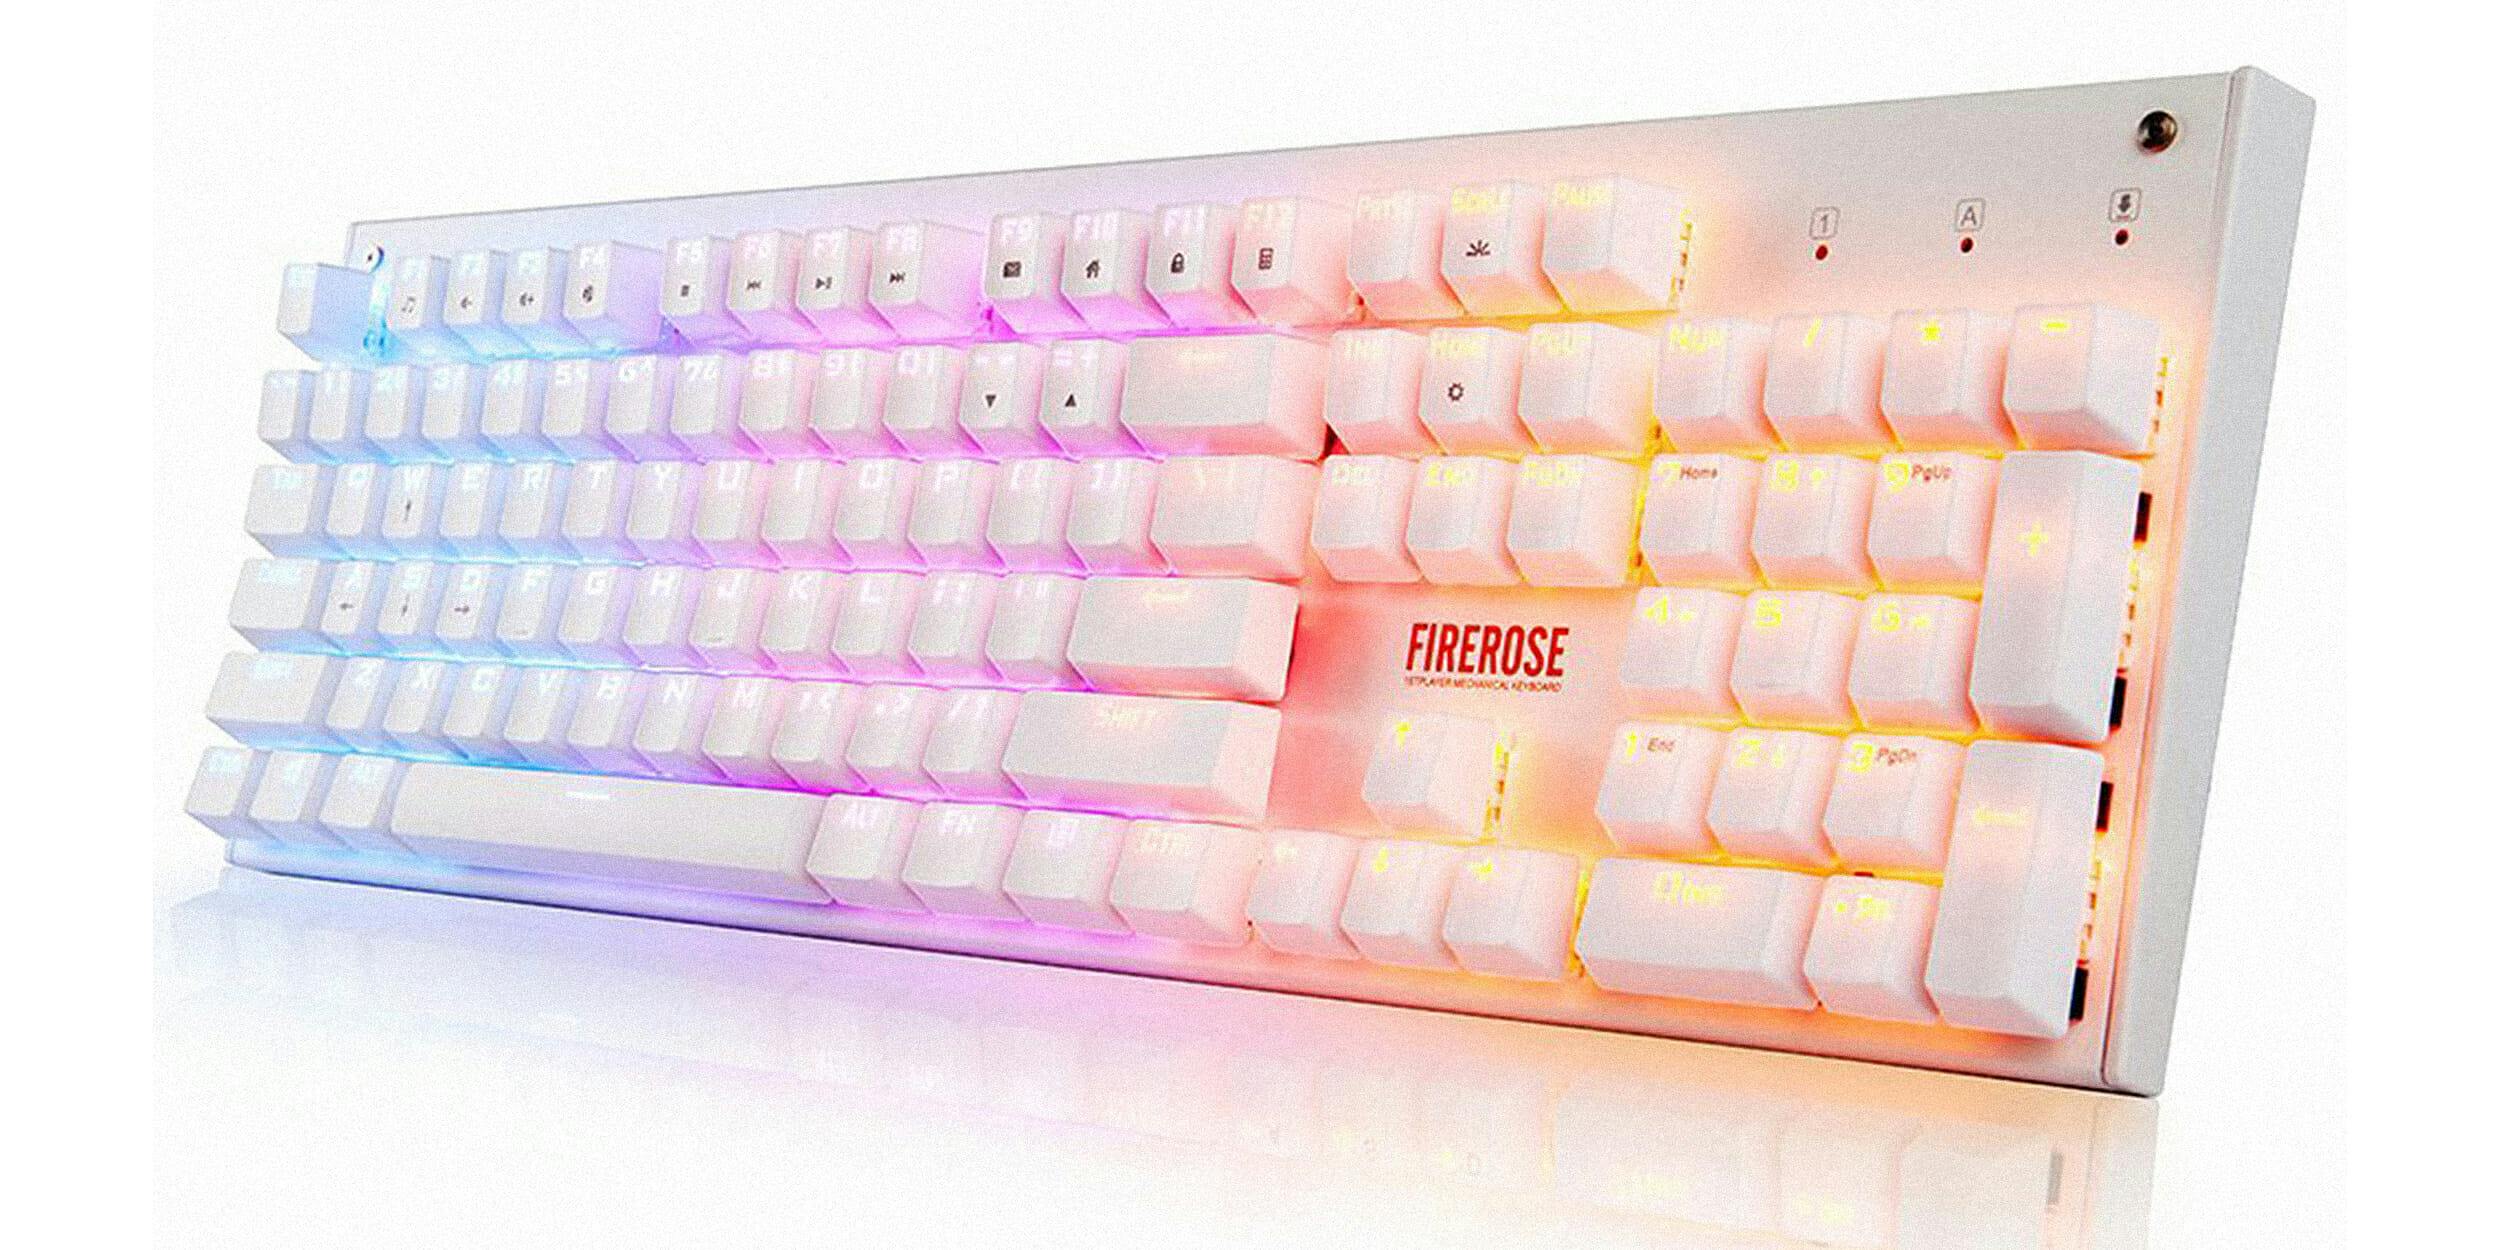 Firerose glowing keyboard